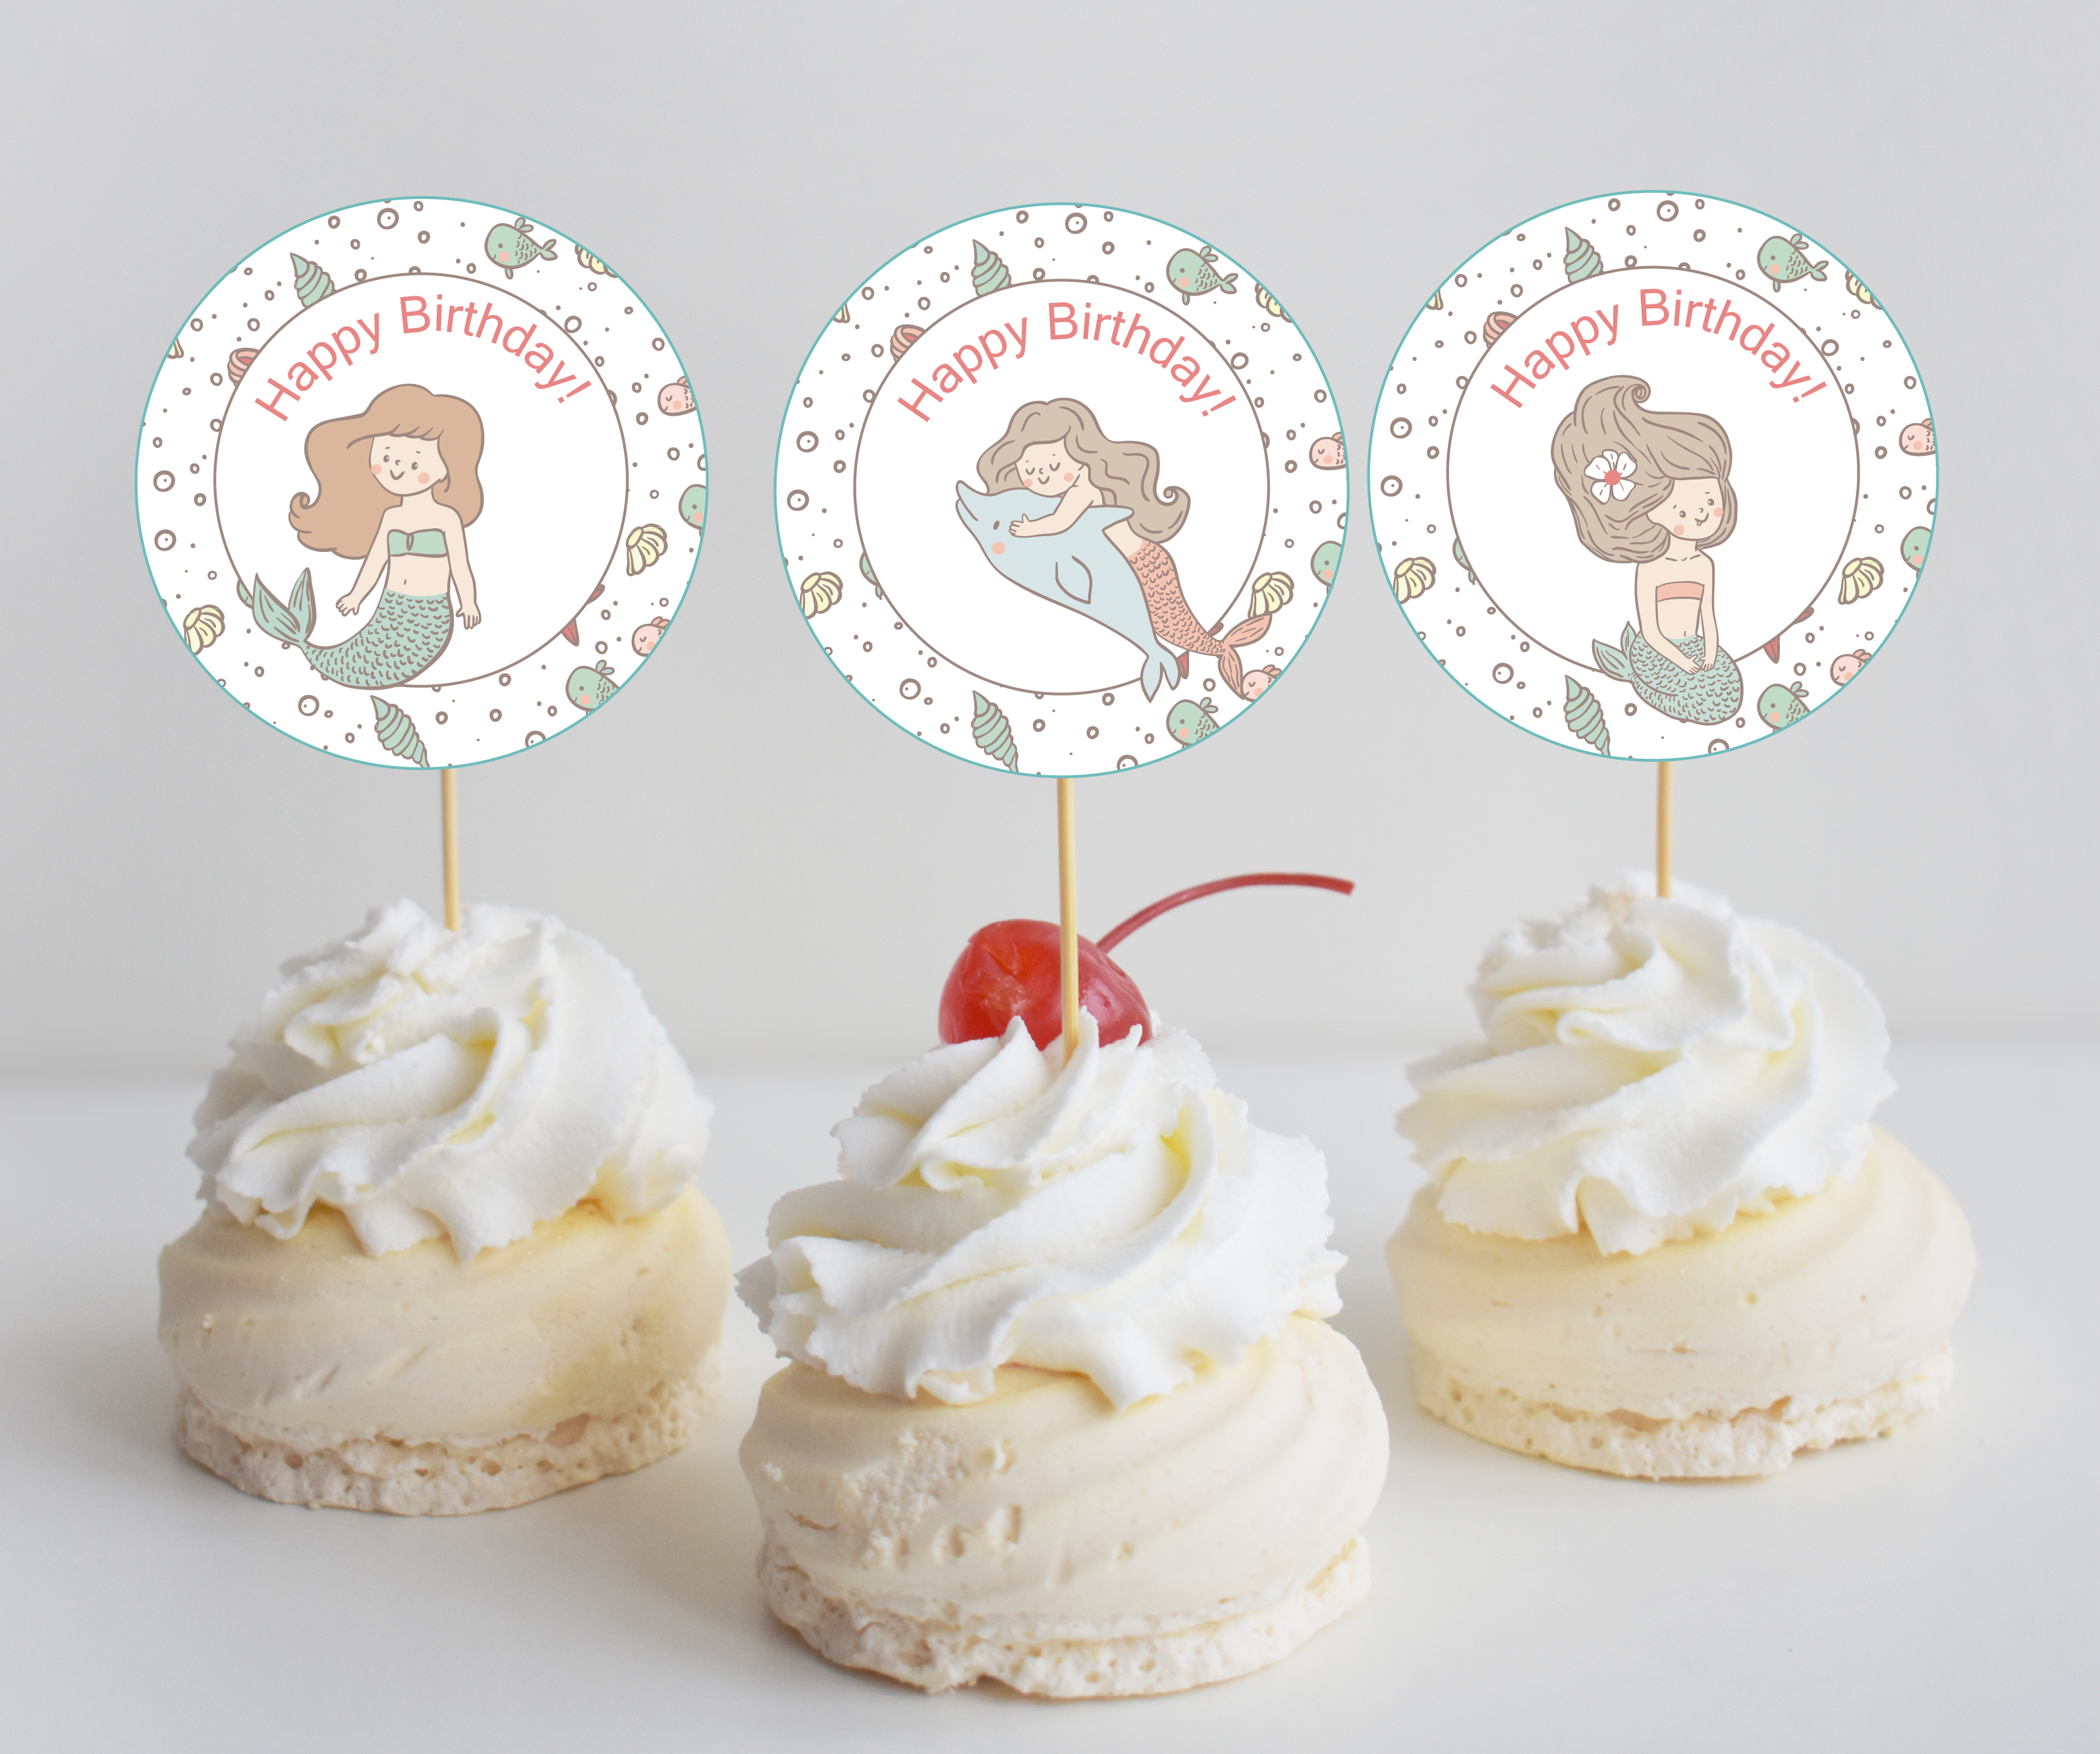 Free Mermaid Birthday Party Printables - Mermaid Party Bundle - Free Printable Mermaid Cupcake Toppers